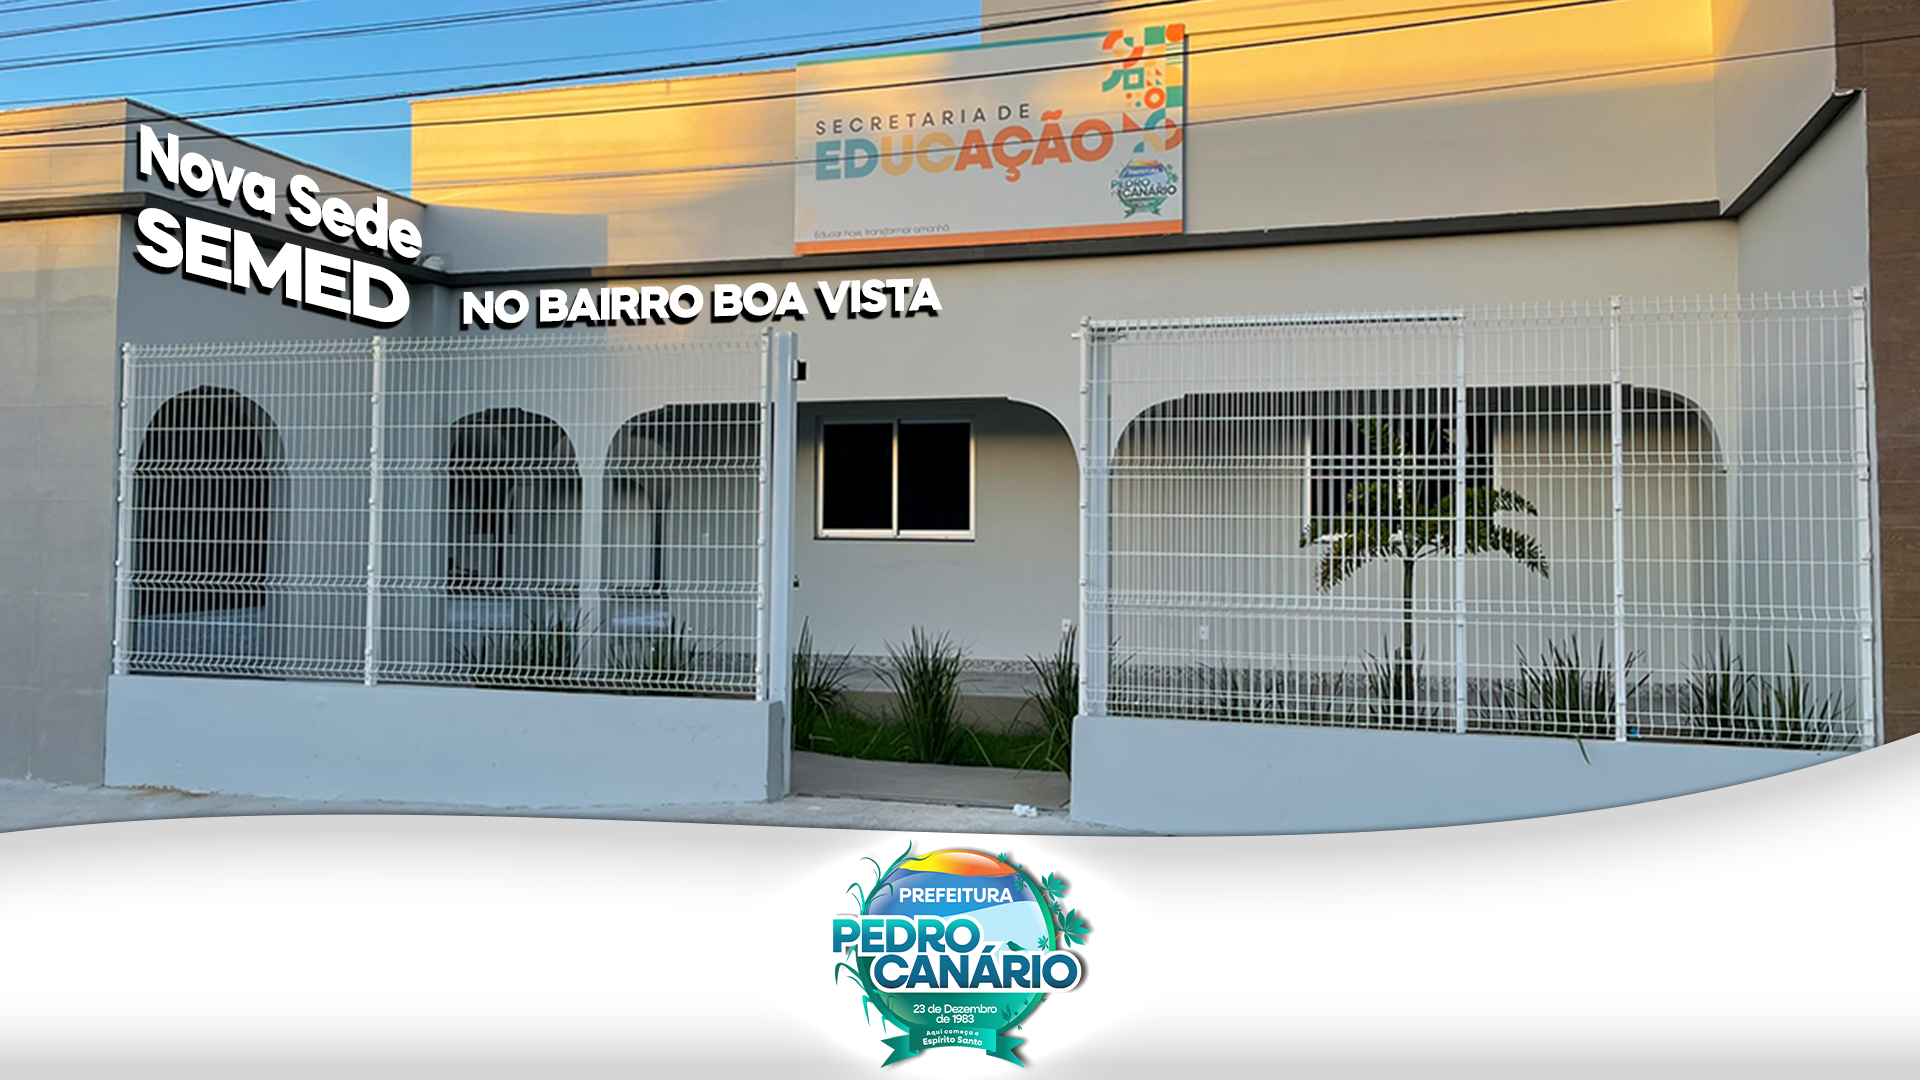 NOTÍCIA: Nova sede da Secretaria de Educação será inaugurada nesta sexta-feira em Pedro Canário